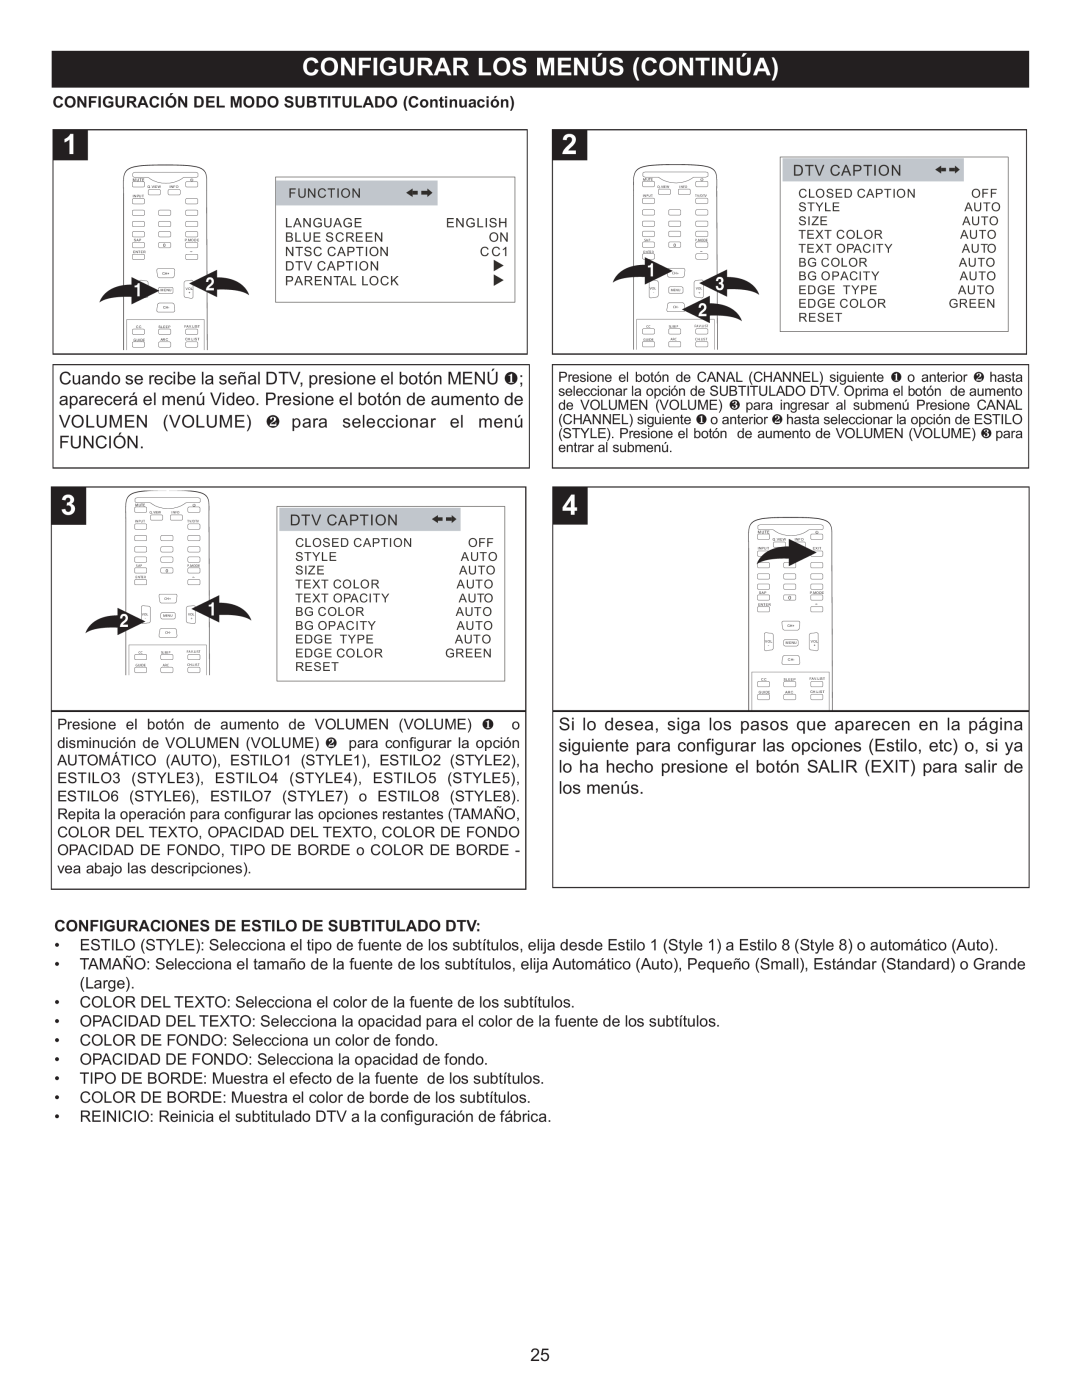 Memorex MT2028D-BLK manual CONFIGURACIÓN DEL MODO SUBTITULADO Continuación, Configuraciones De Estilo De Subtitulado Dtv 